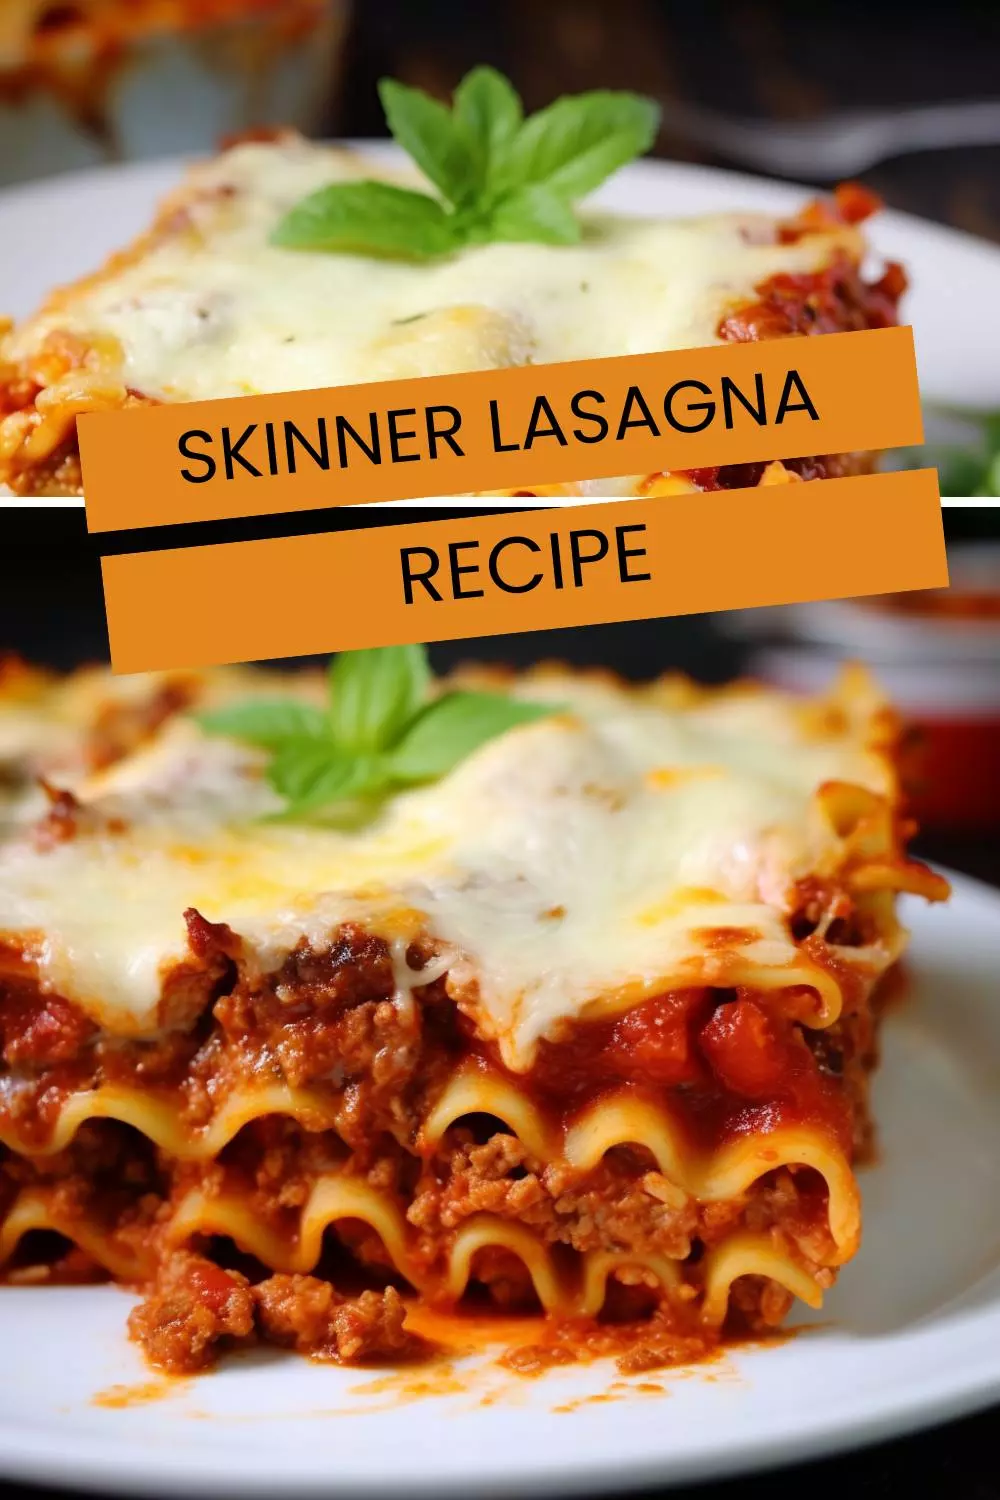 Skinner Lasagna Recipe